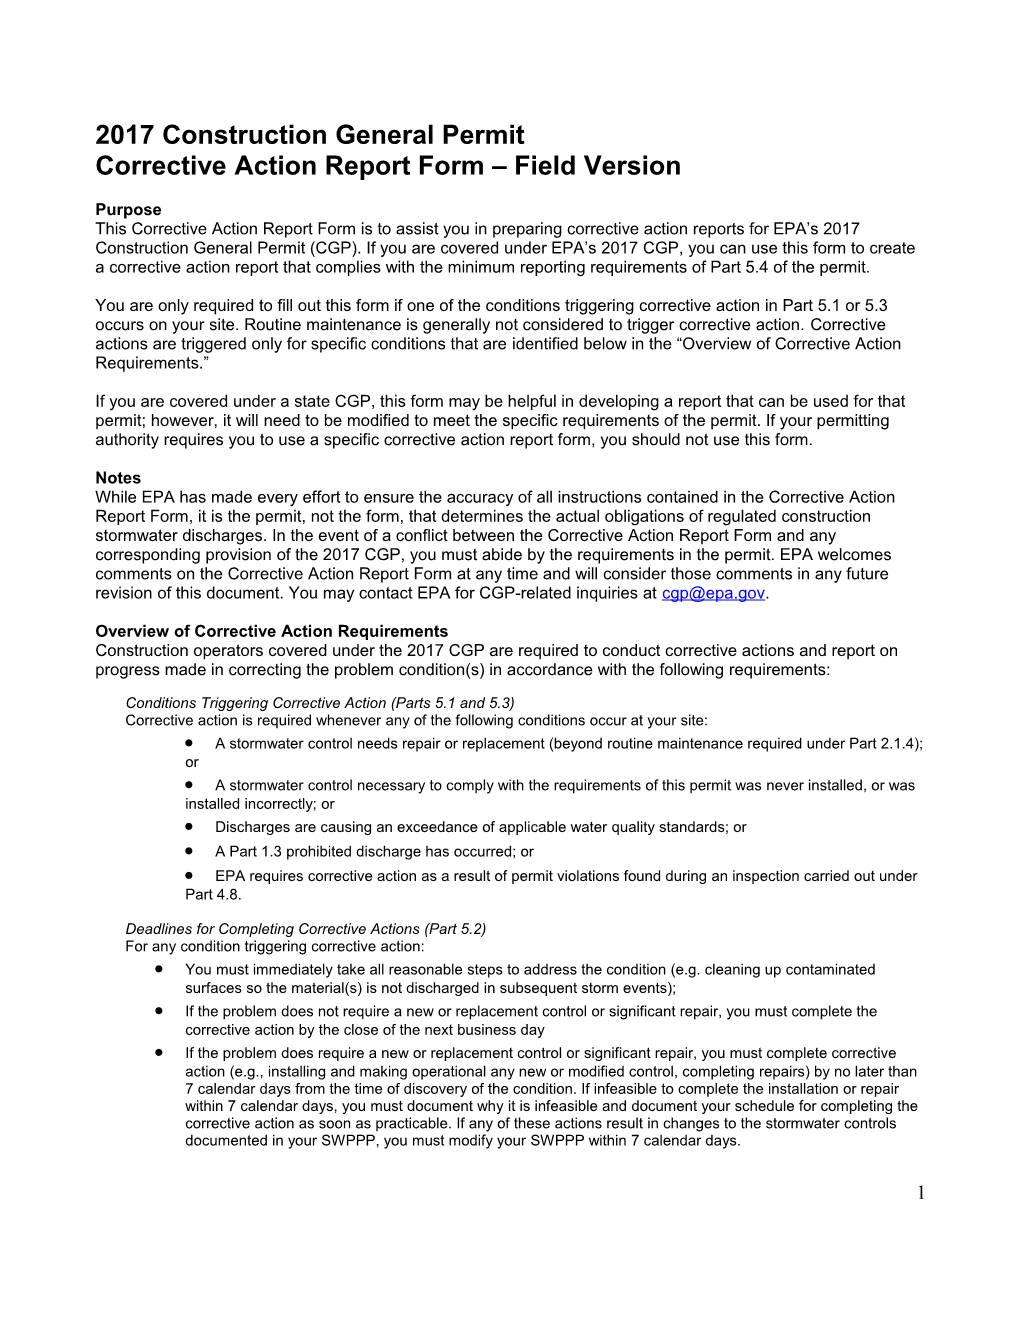 Corrective Action Reportform Field Version